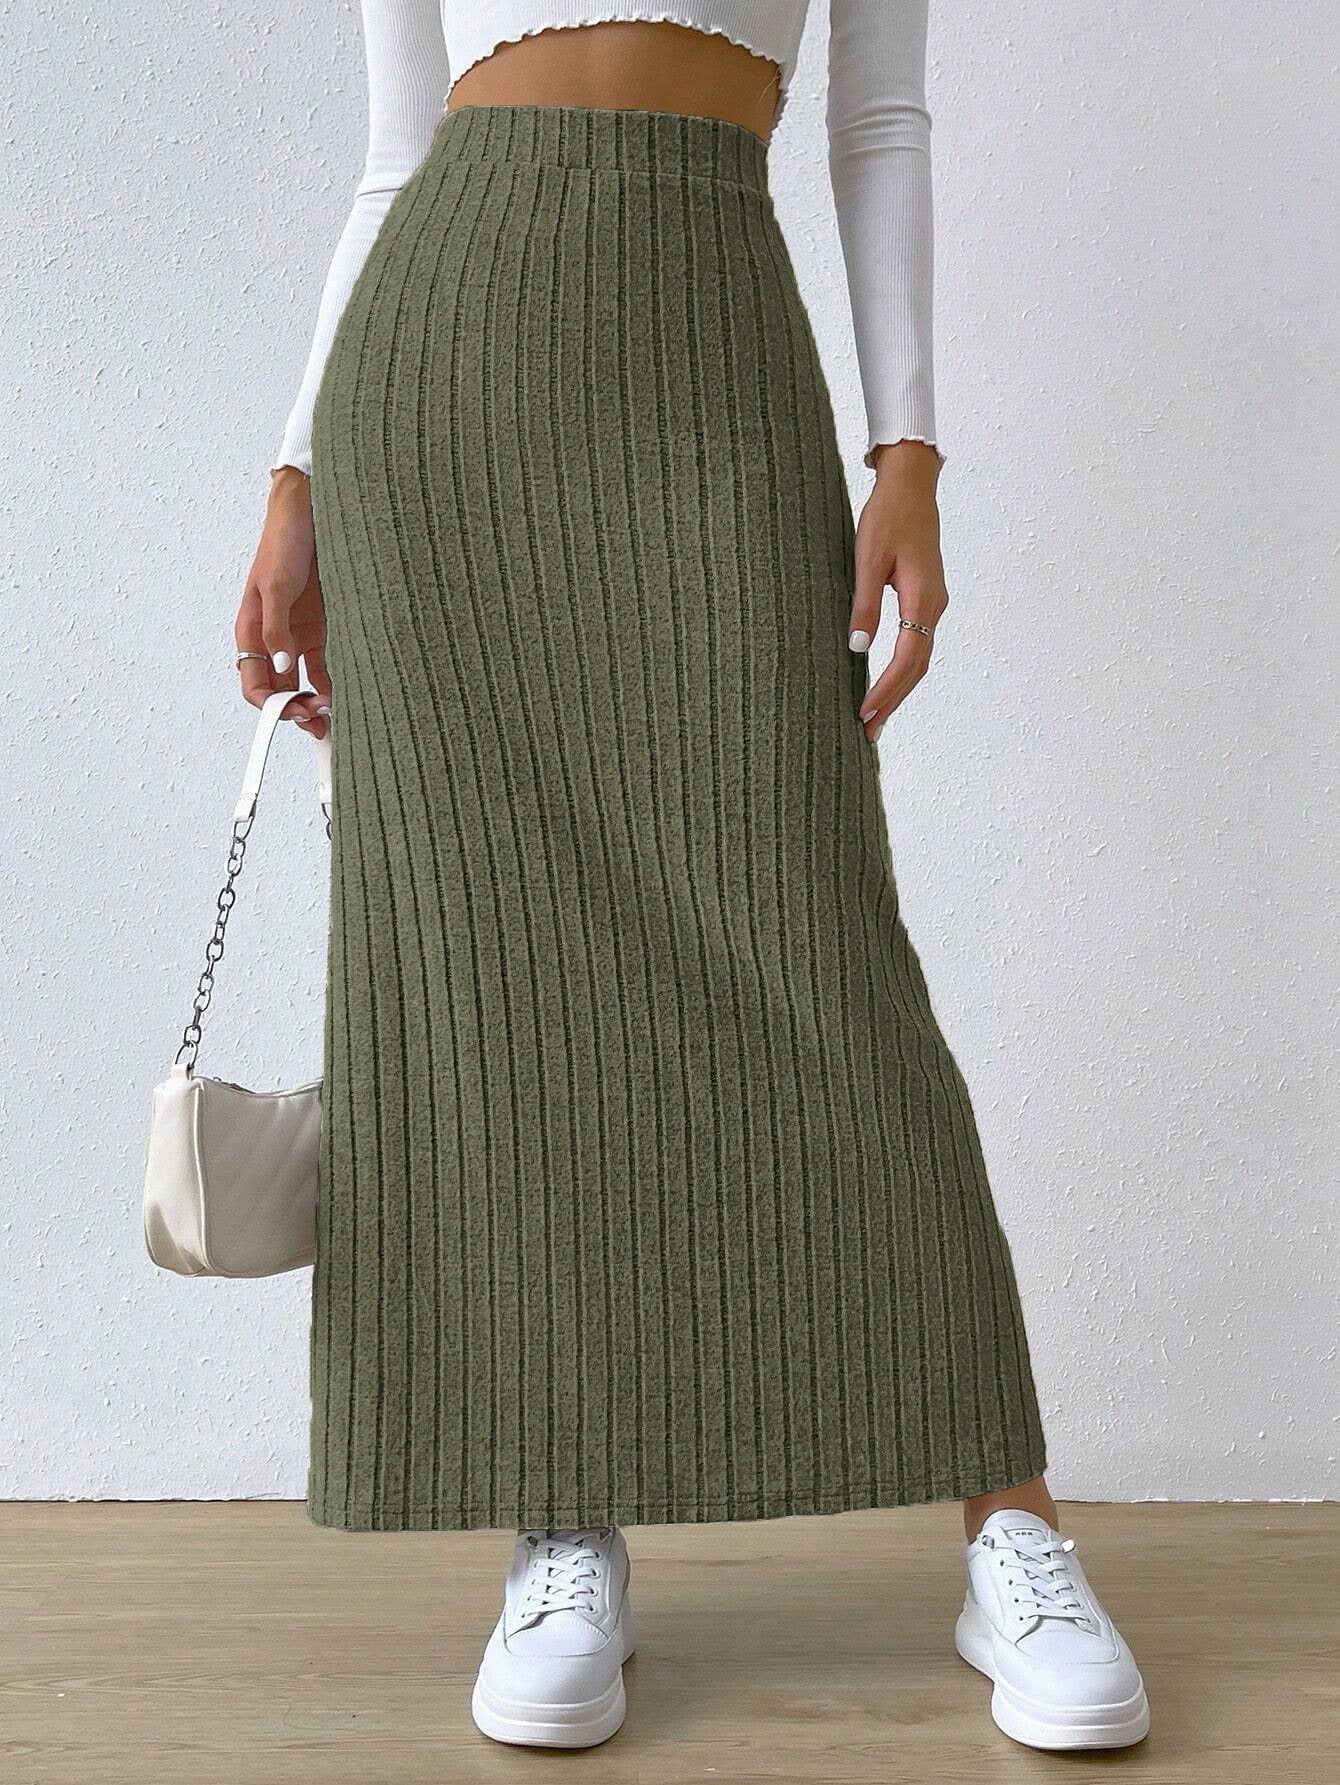 Spring Long Skirt High Waist Side Slit Slim Fit Knitted Women's Dress